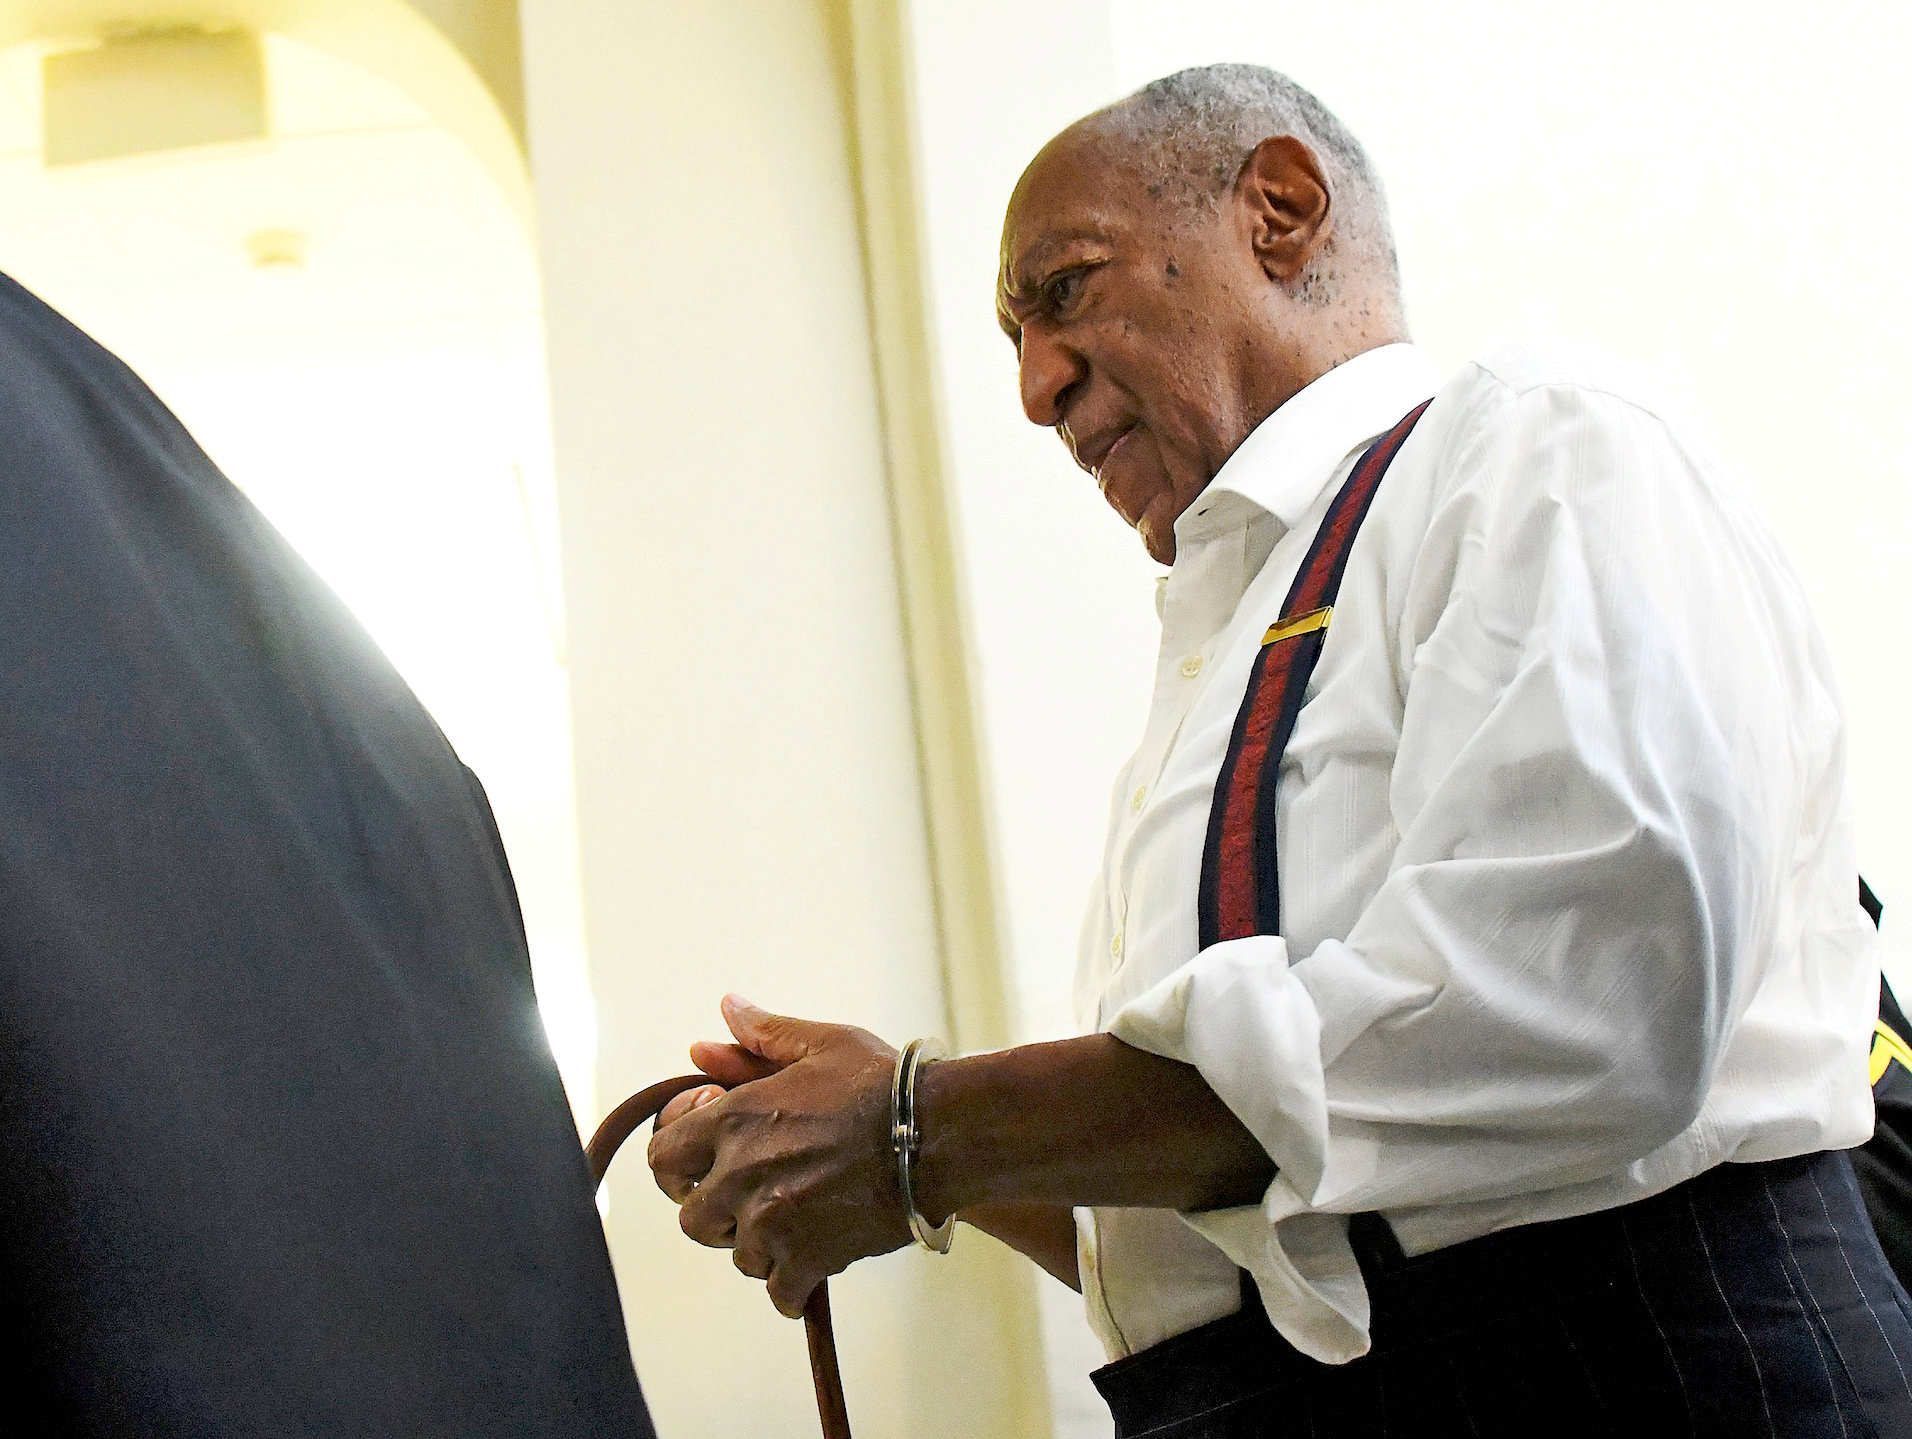 Bil Cosby / Reuters